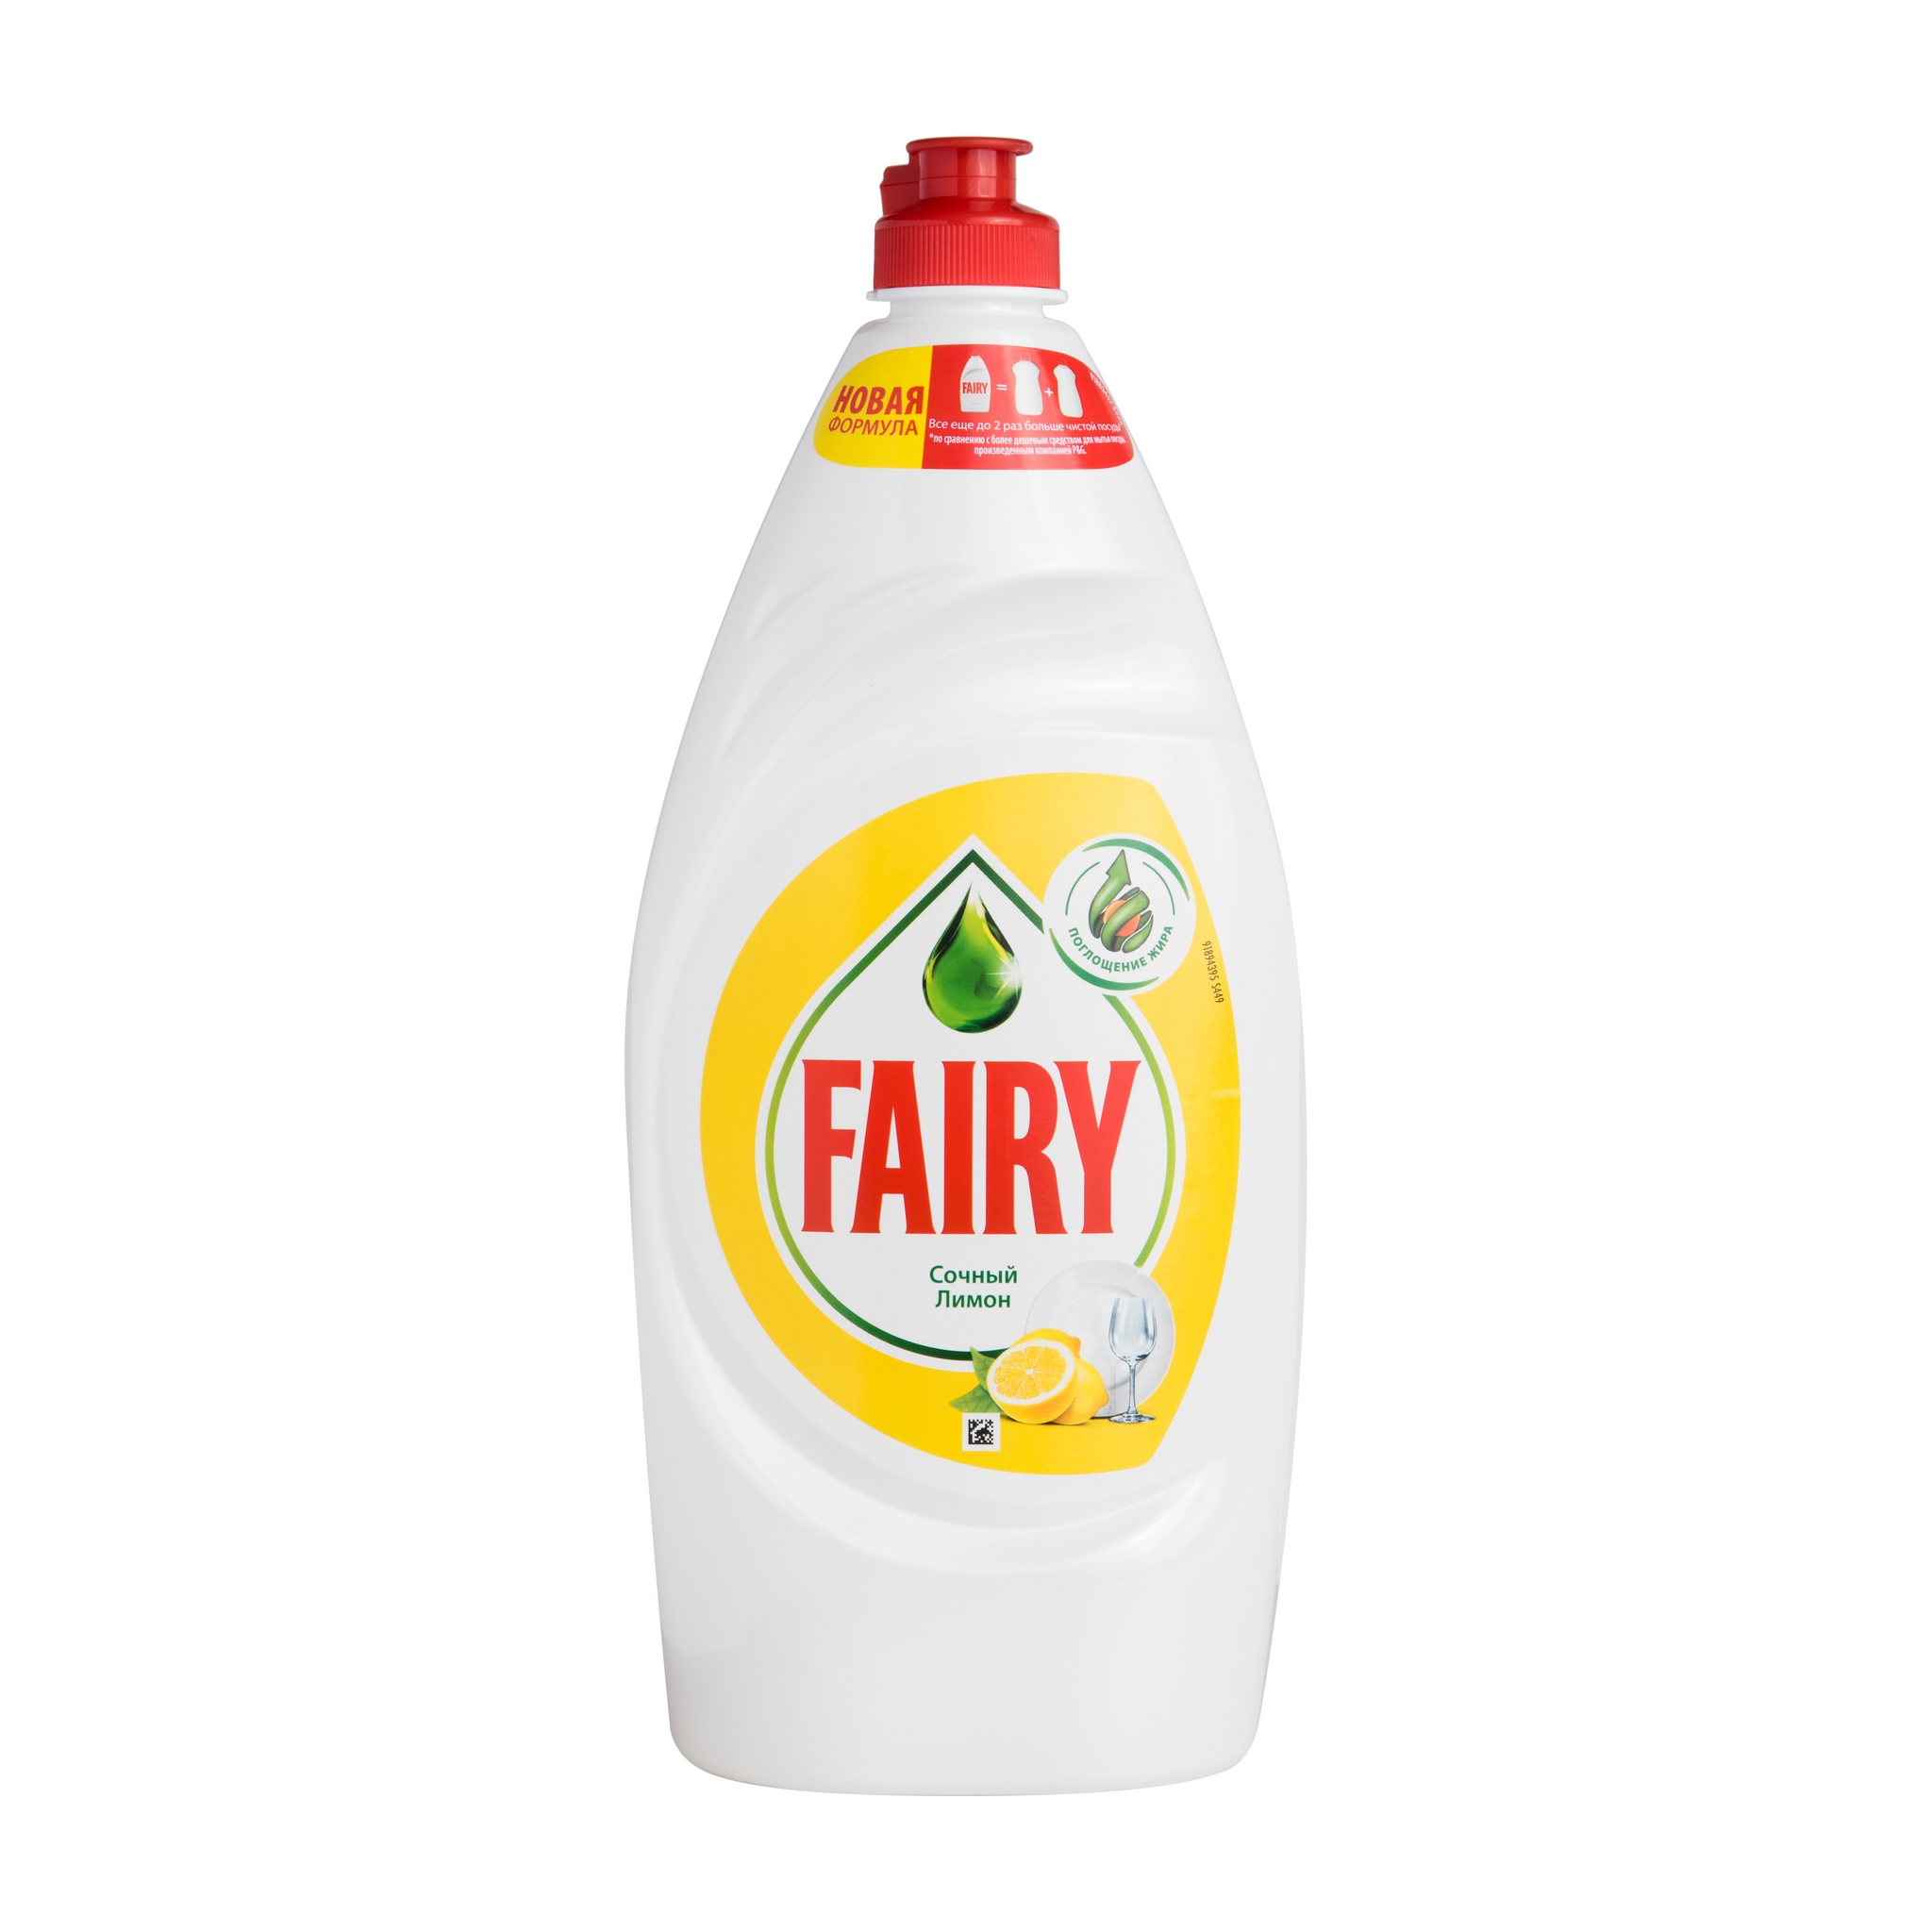 Средство для мытья посуды Fairy Сочный лимон - рейтинг 4,33 по отзывам .